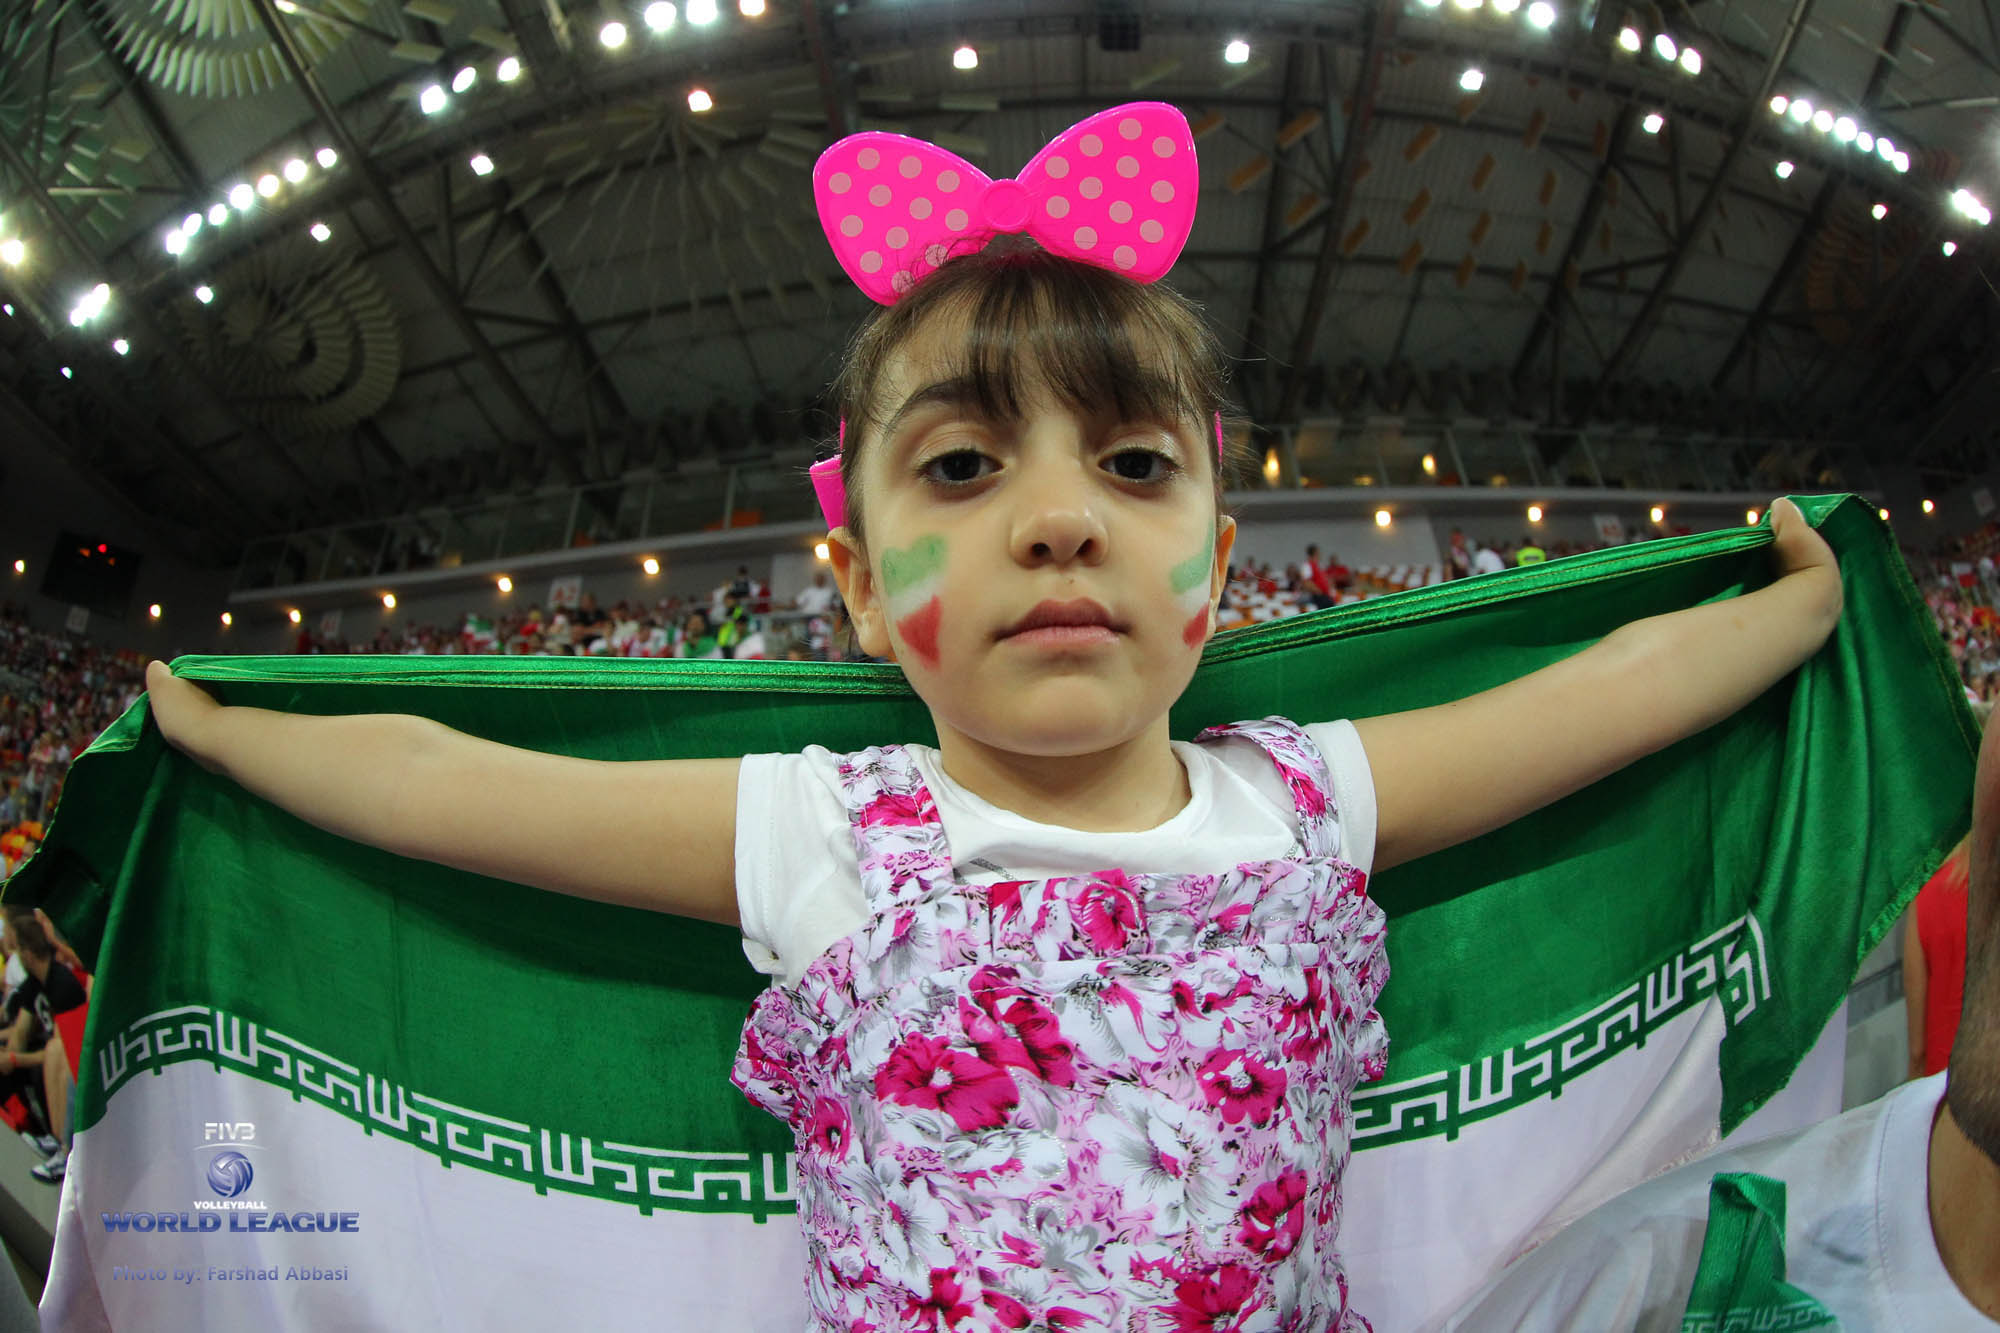 لیگ جهانی والیبال 2015؛ تماشاگران بازی ایران و لهستان از قاب تصویر